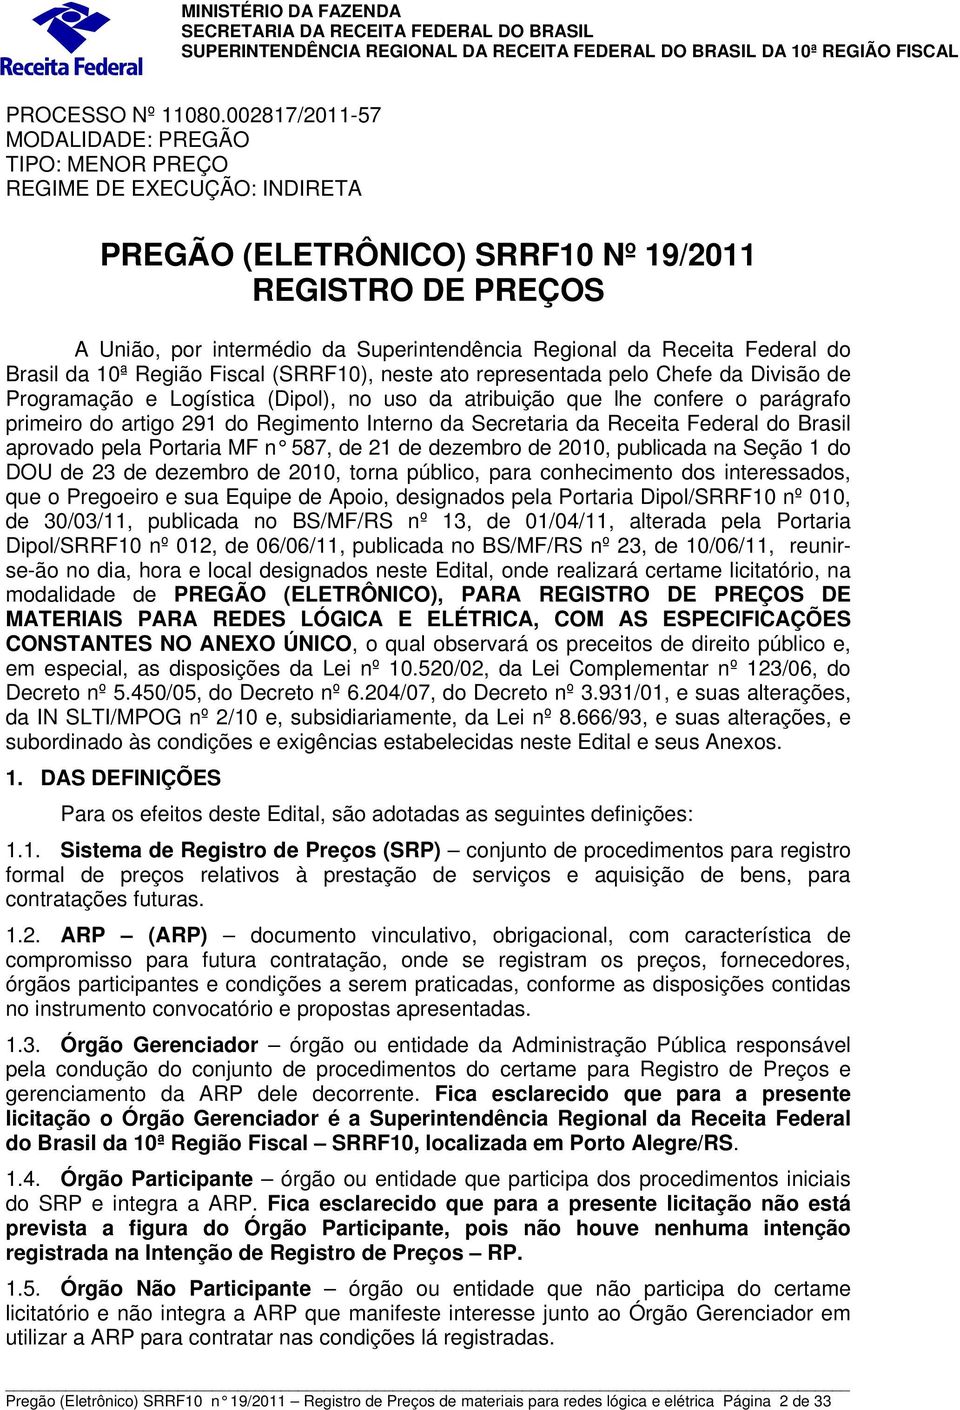 Receita Federal do Brasil da 10ª Região Fiscal (SRRF10), neste ato representada pelo Chefe da Divisão de Programação e Logística (Dipol), no uso da atribuição que lhe confere o parágrafo primeiro do